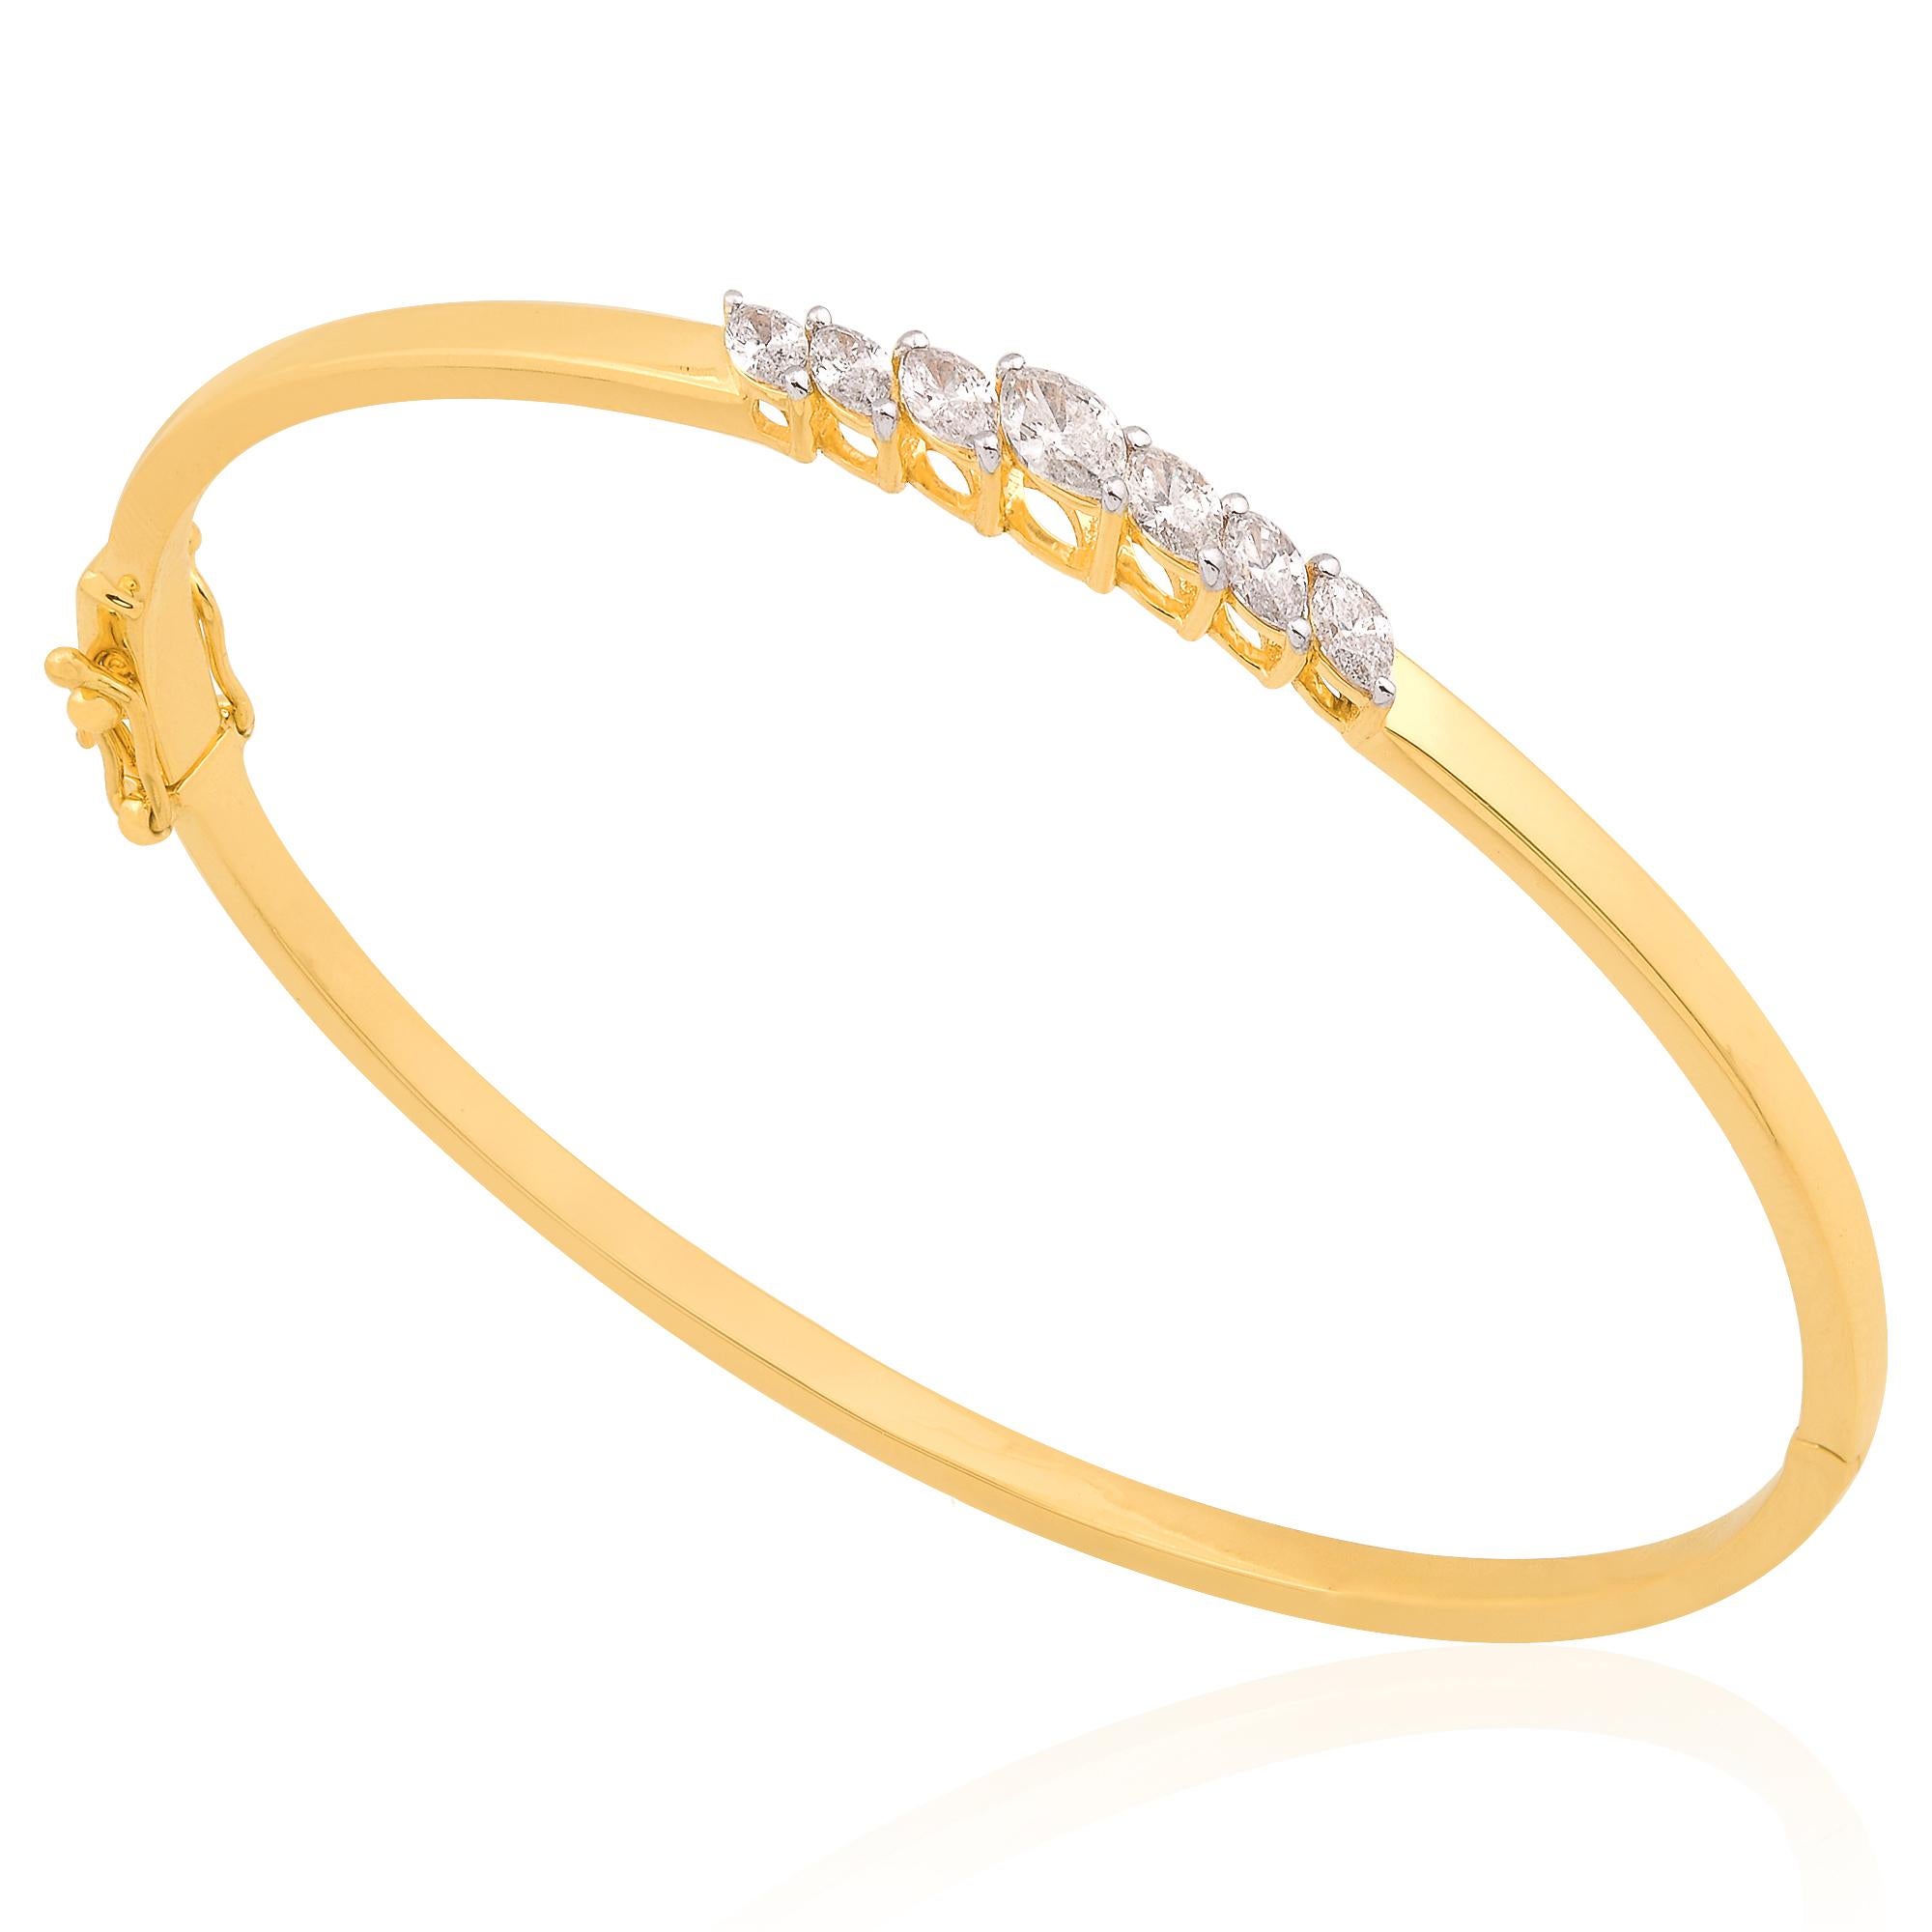 Le point focal de ce superbe bracelet est l'envoûtant diamant taille marquise, pesant 0,60 carats, soigneusement serti de manière sûre et captivante. Sa forme allongée respire la grâce et la sophistication, tandis que ses facettes brillantes captent